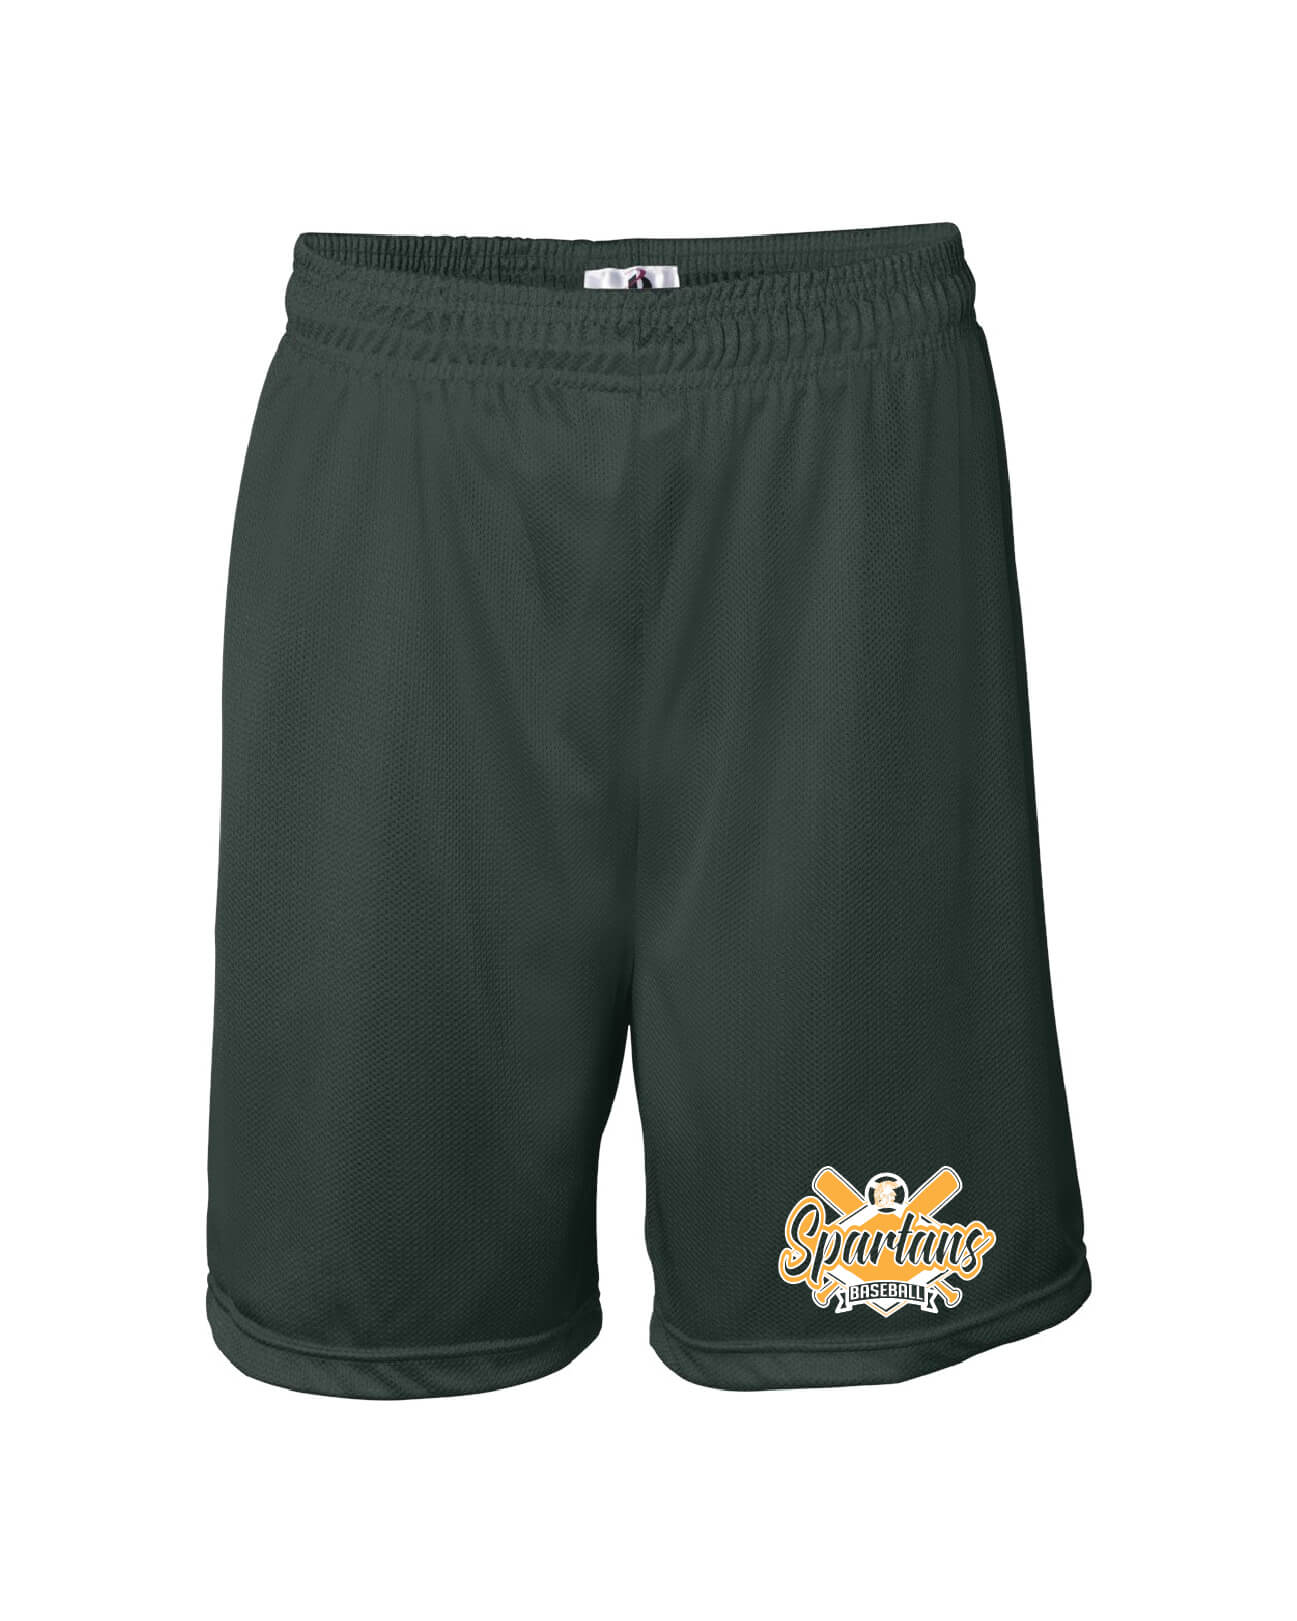 Badger Mesh Shorts green, Spartans Baseball